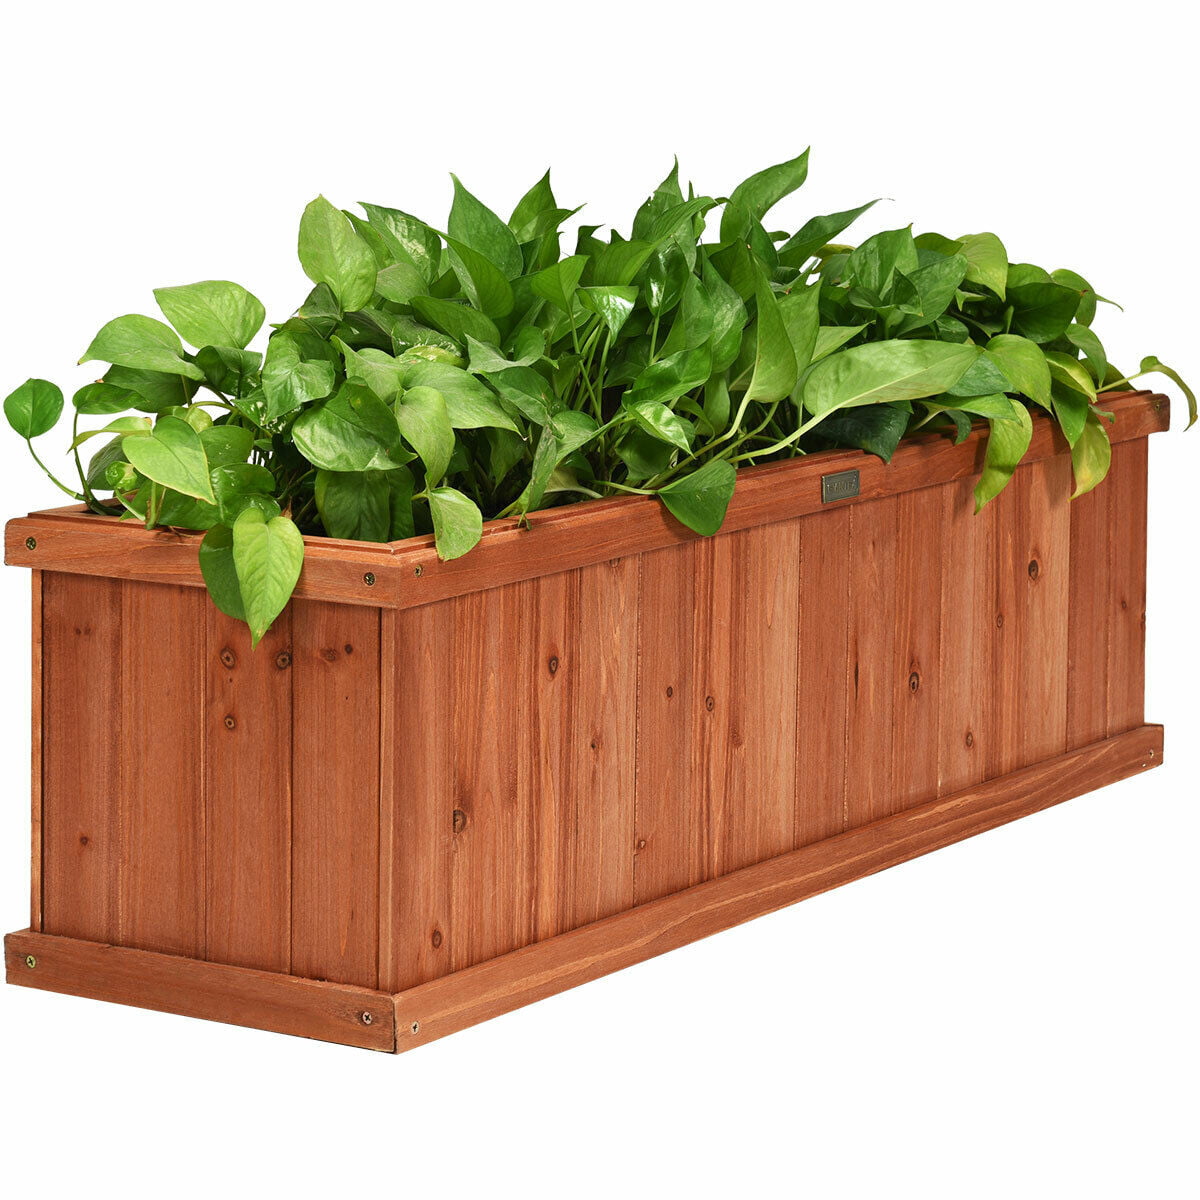 40 Inch Wooden Flower Planter Raised Bed Box Garden Yard Decorative